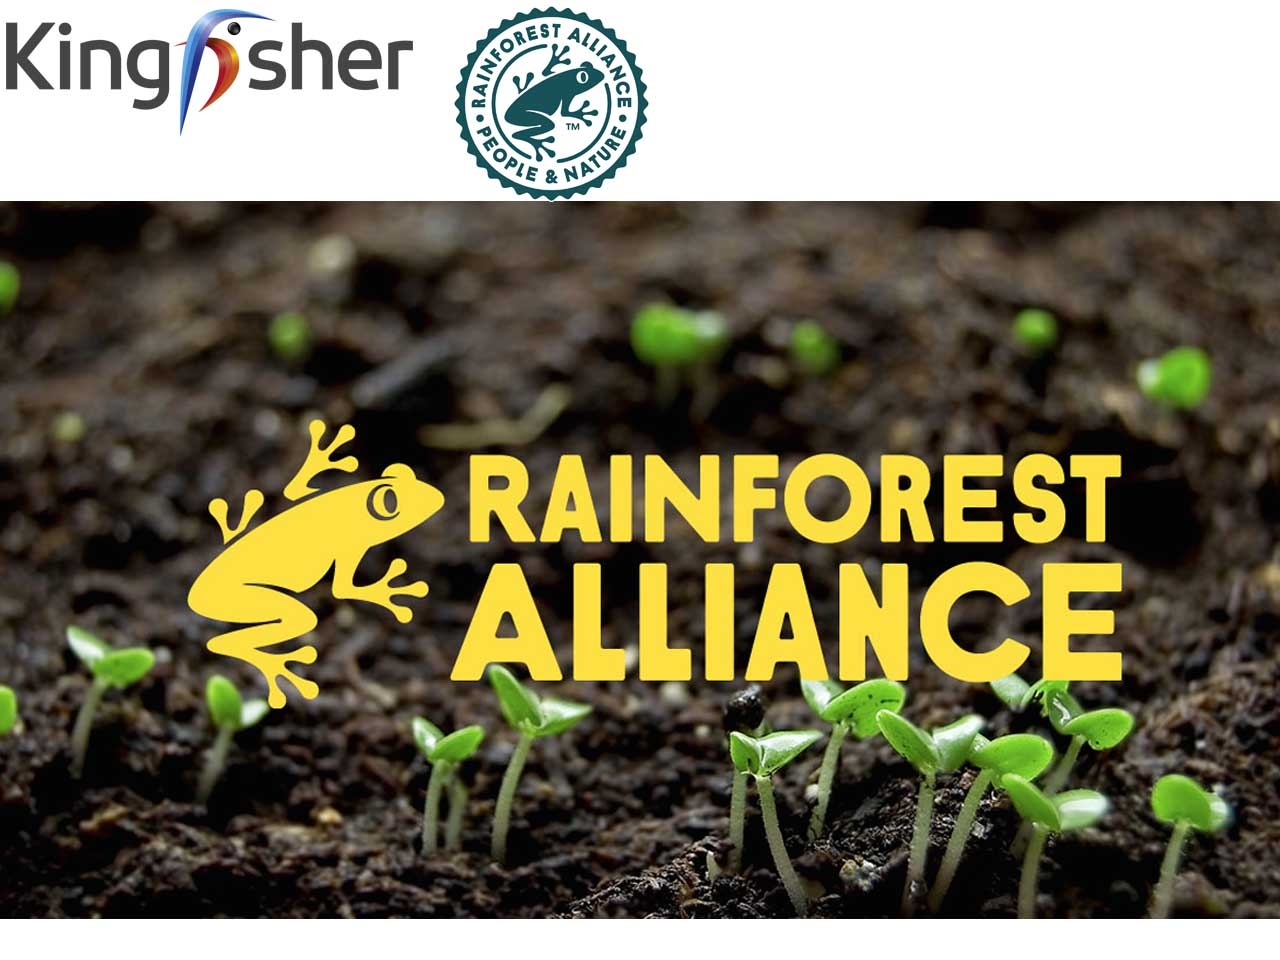 Kingfisher rejoint l’association Rainforest Alliance en tant que membre fondateur de l’initiative Forest Allies